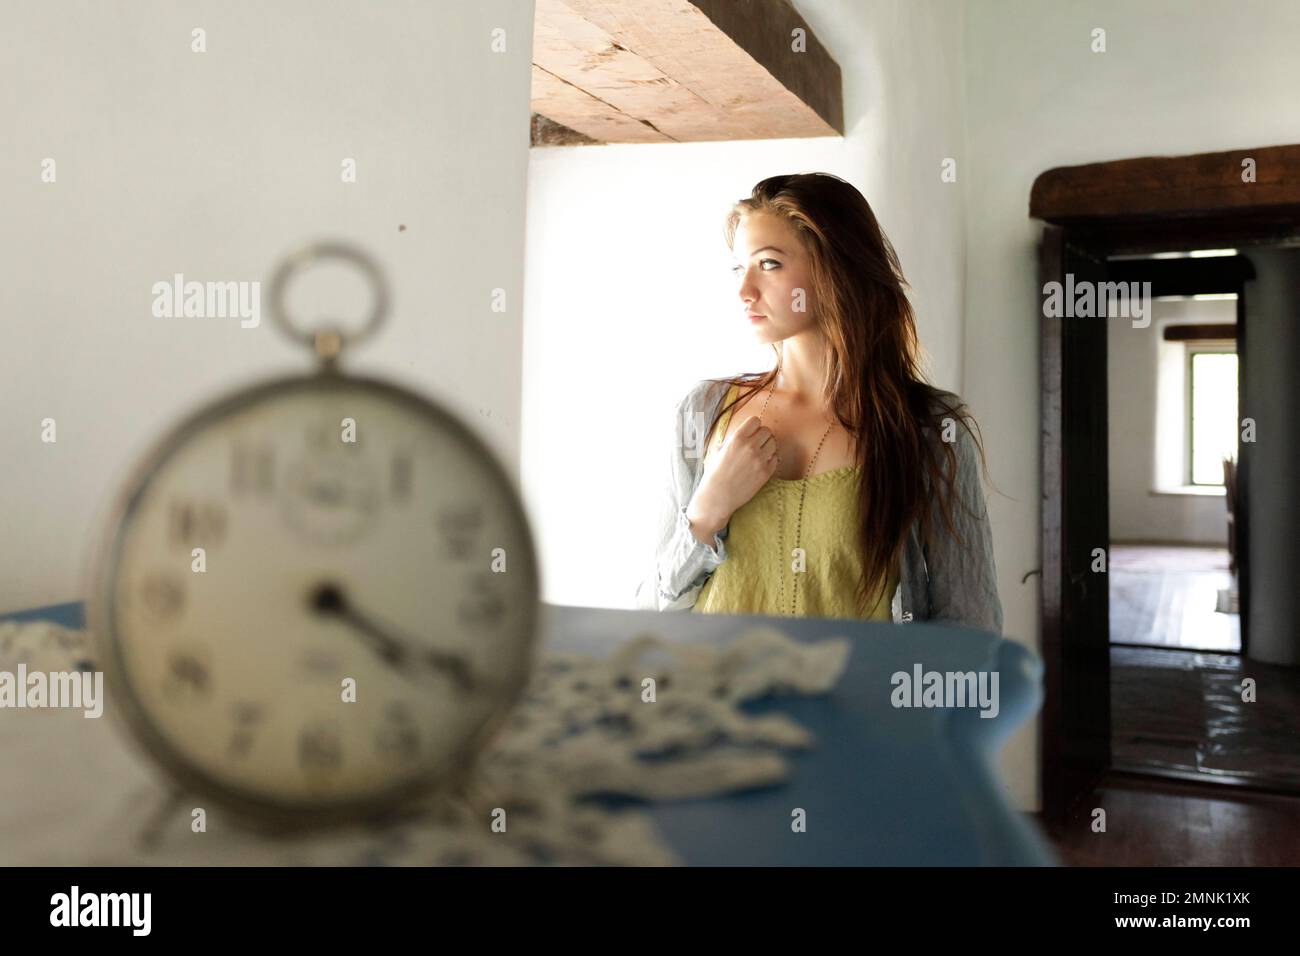 Santa Fe, Nouveau-Mexique, États-Unis. Une jeune femme regarde loin. Horloge vintage. Modèle libéré. Banque D'Images